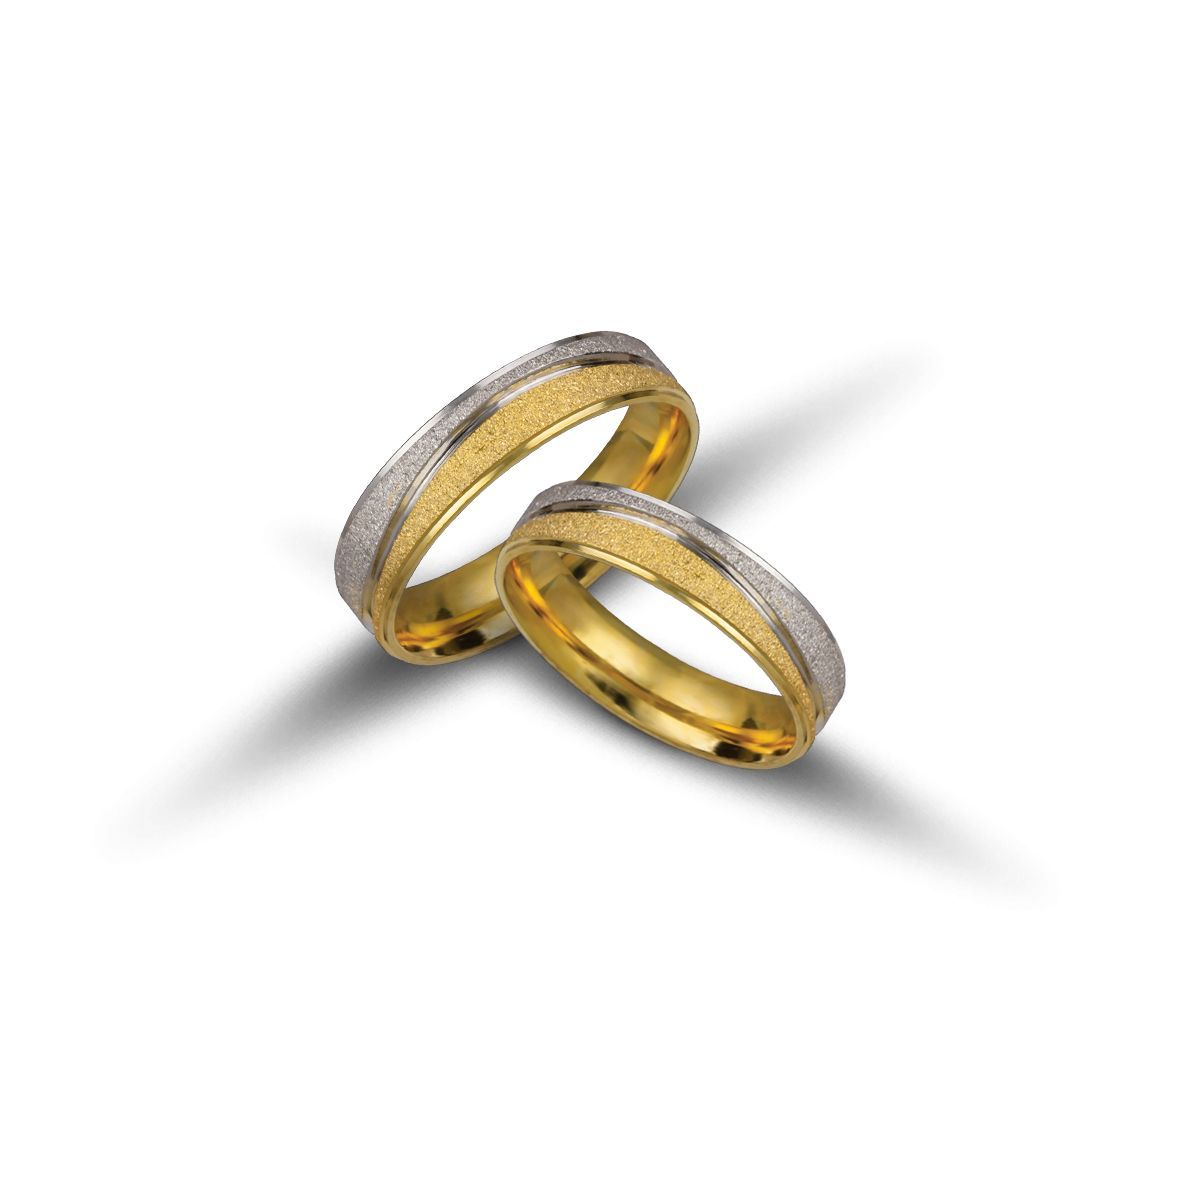 White gold & gold wedding rings 5mm (code VK1075/50)